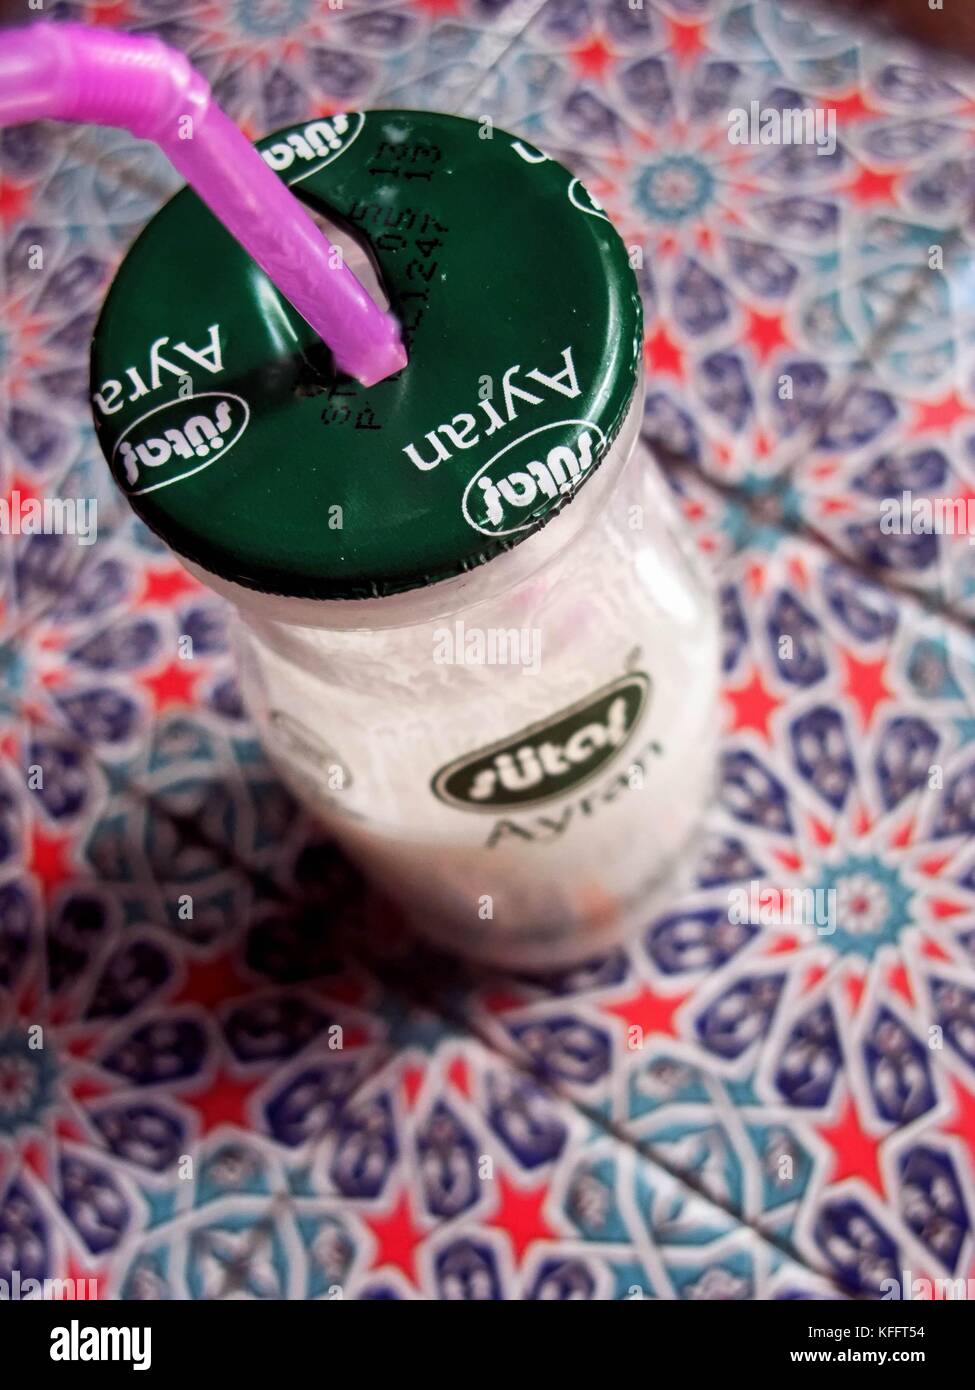 Eine Flasche ayran. Traditionelle türkische Joghurt & Salz trinken  Stockfotografie - Alamy